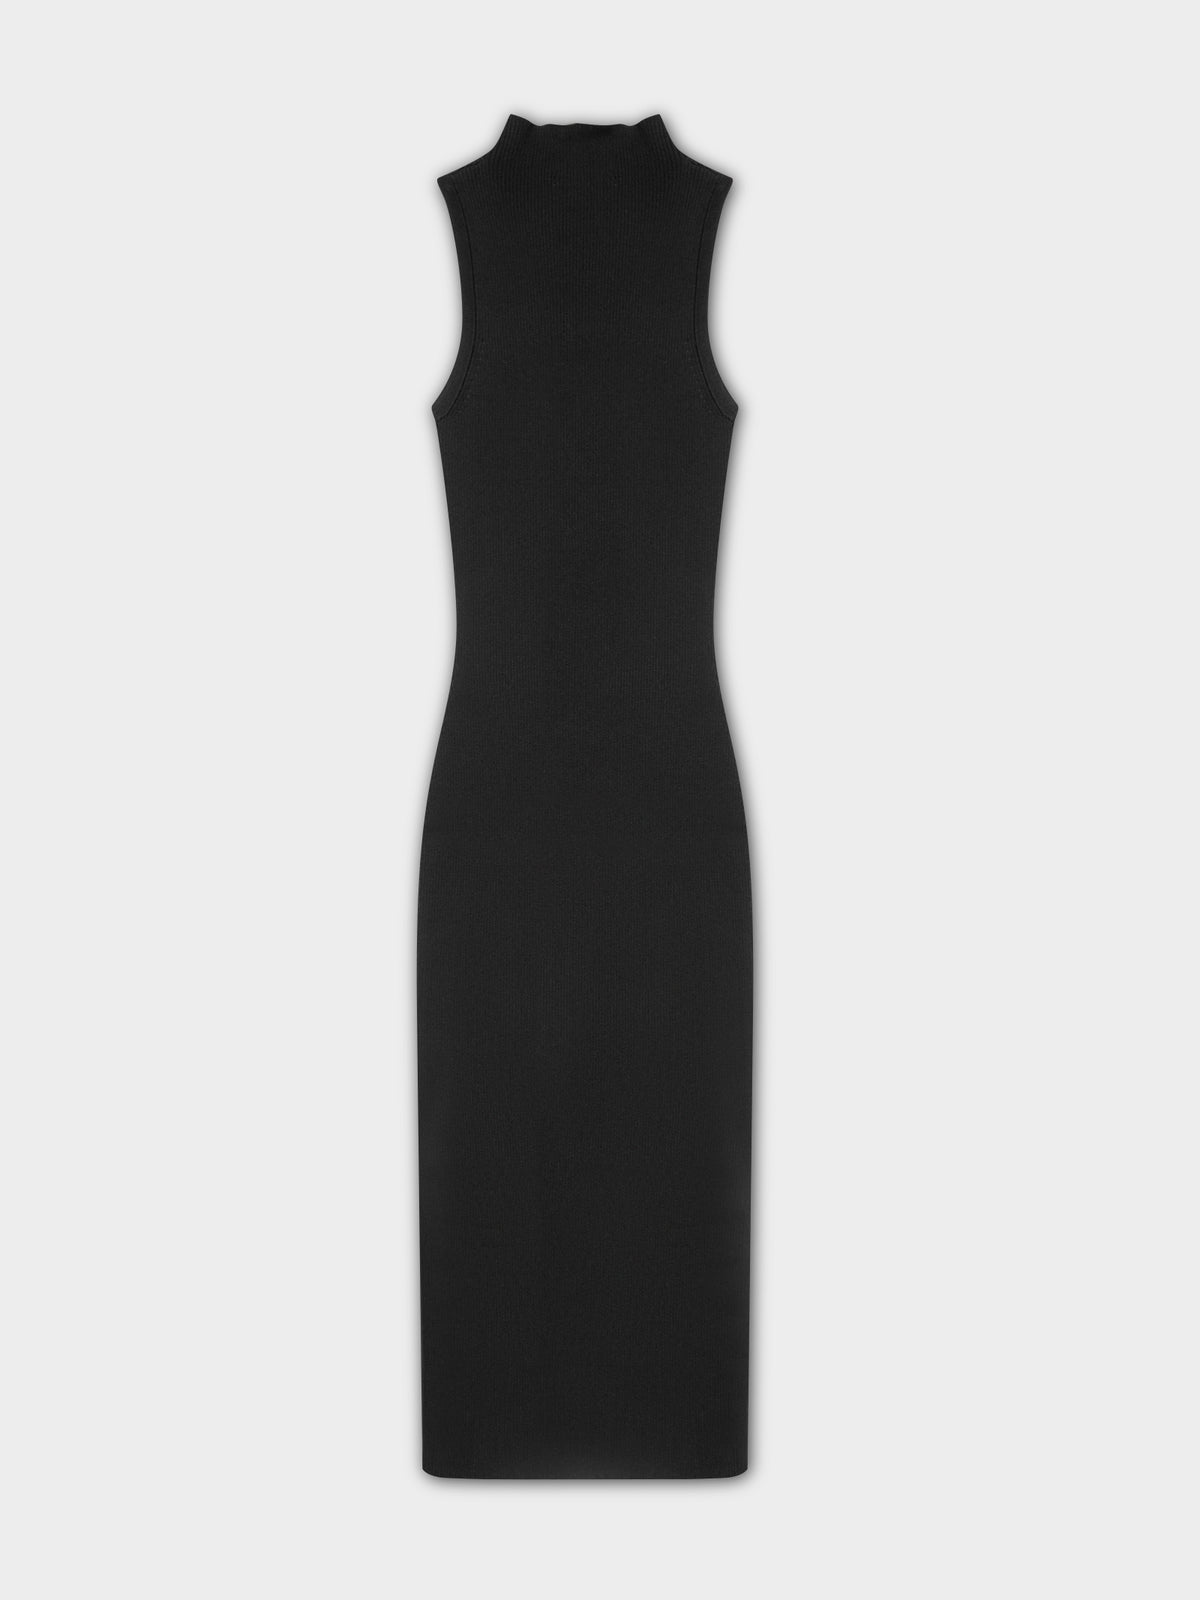 Toni Knit Dress in Black